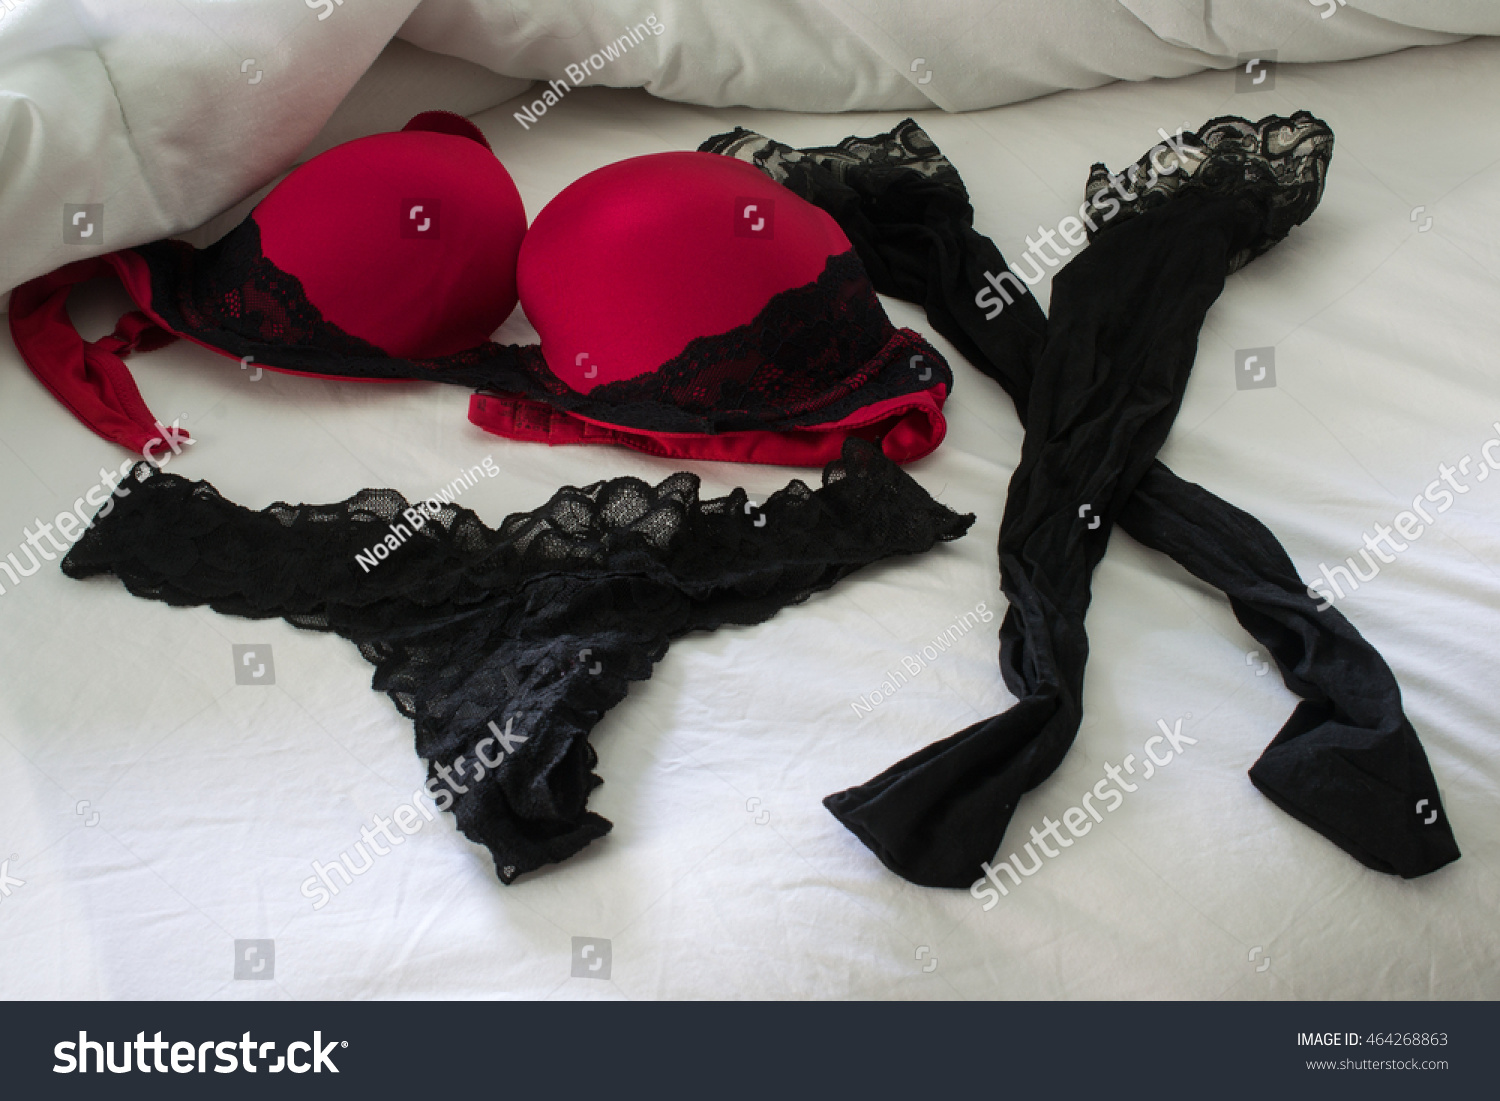 Black lace seduction fan pictures